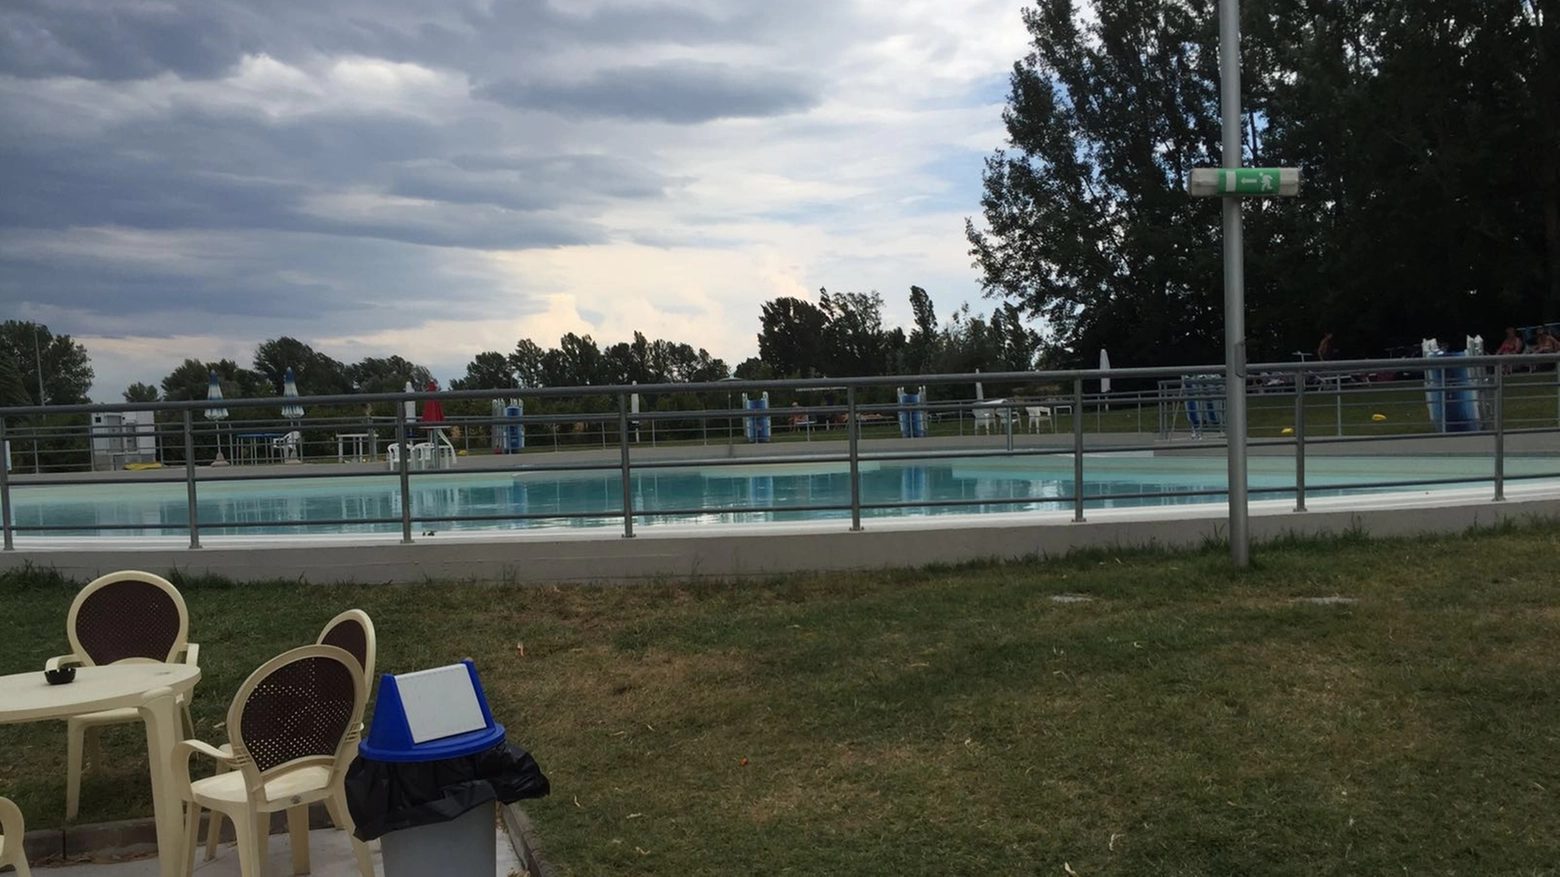 La piscina comunale di Ozzano teatro del dramma